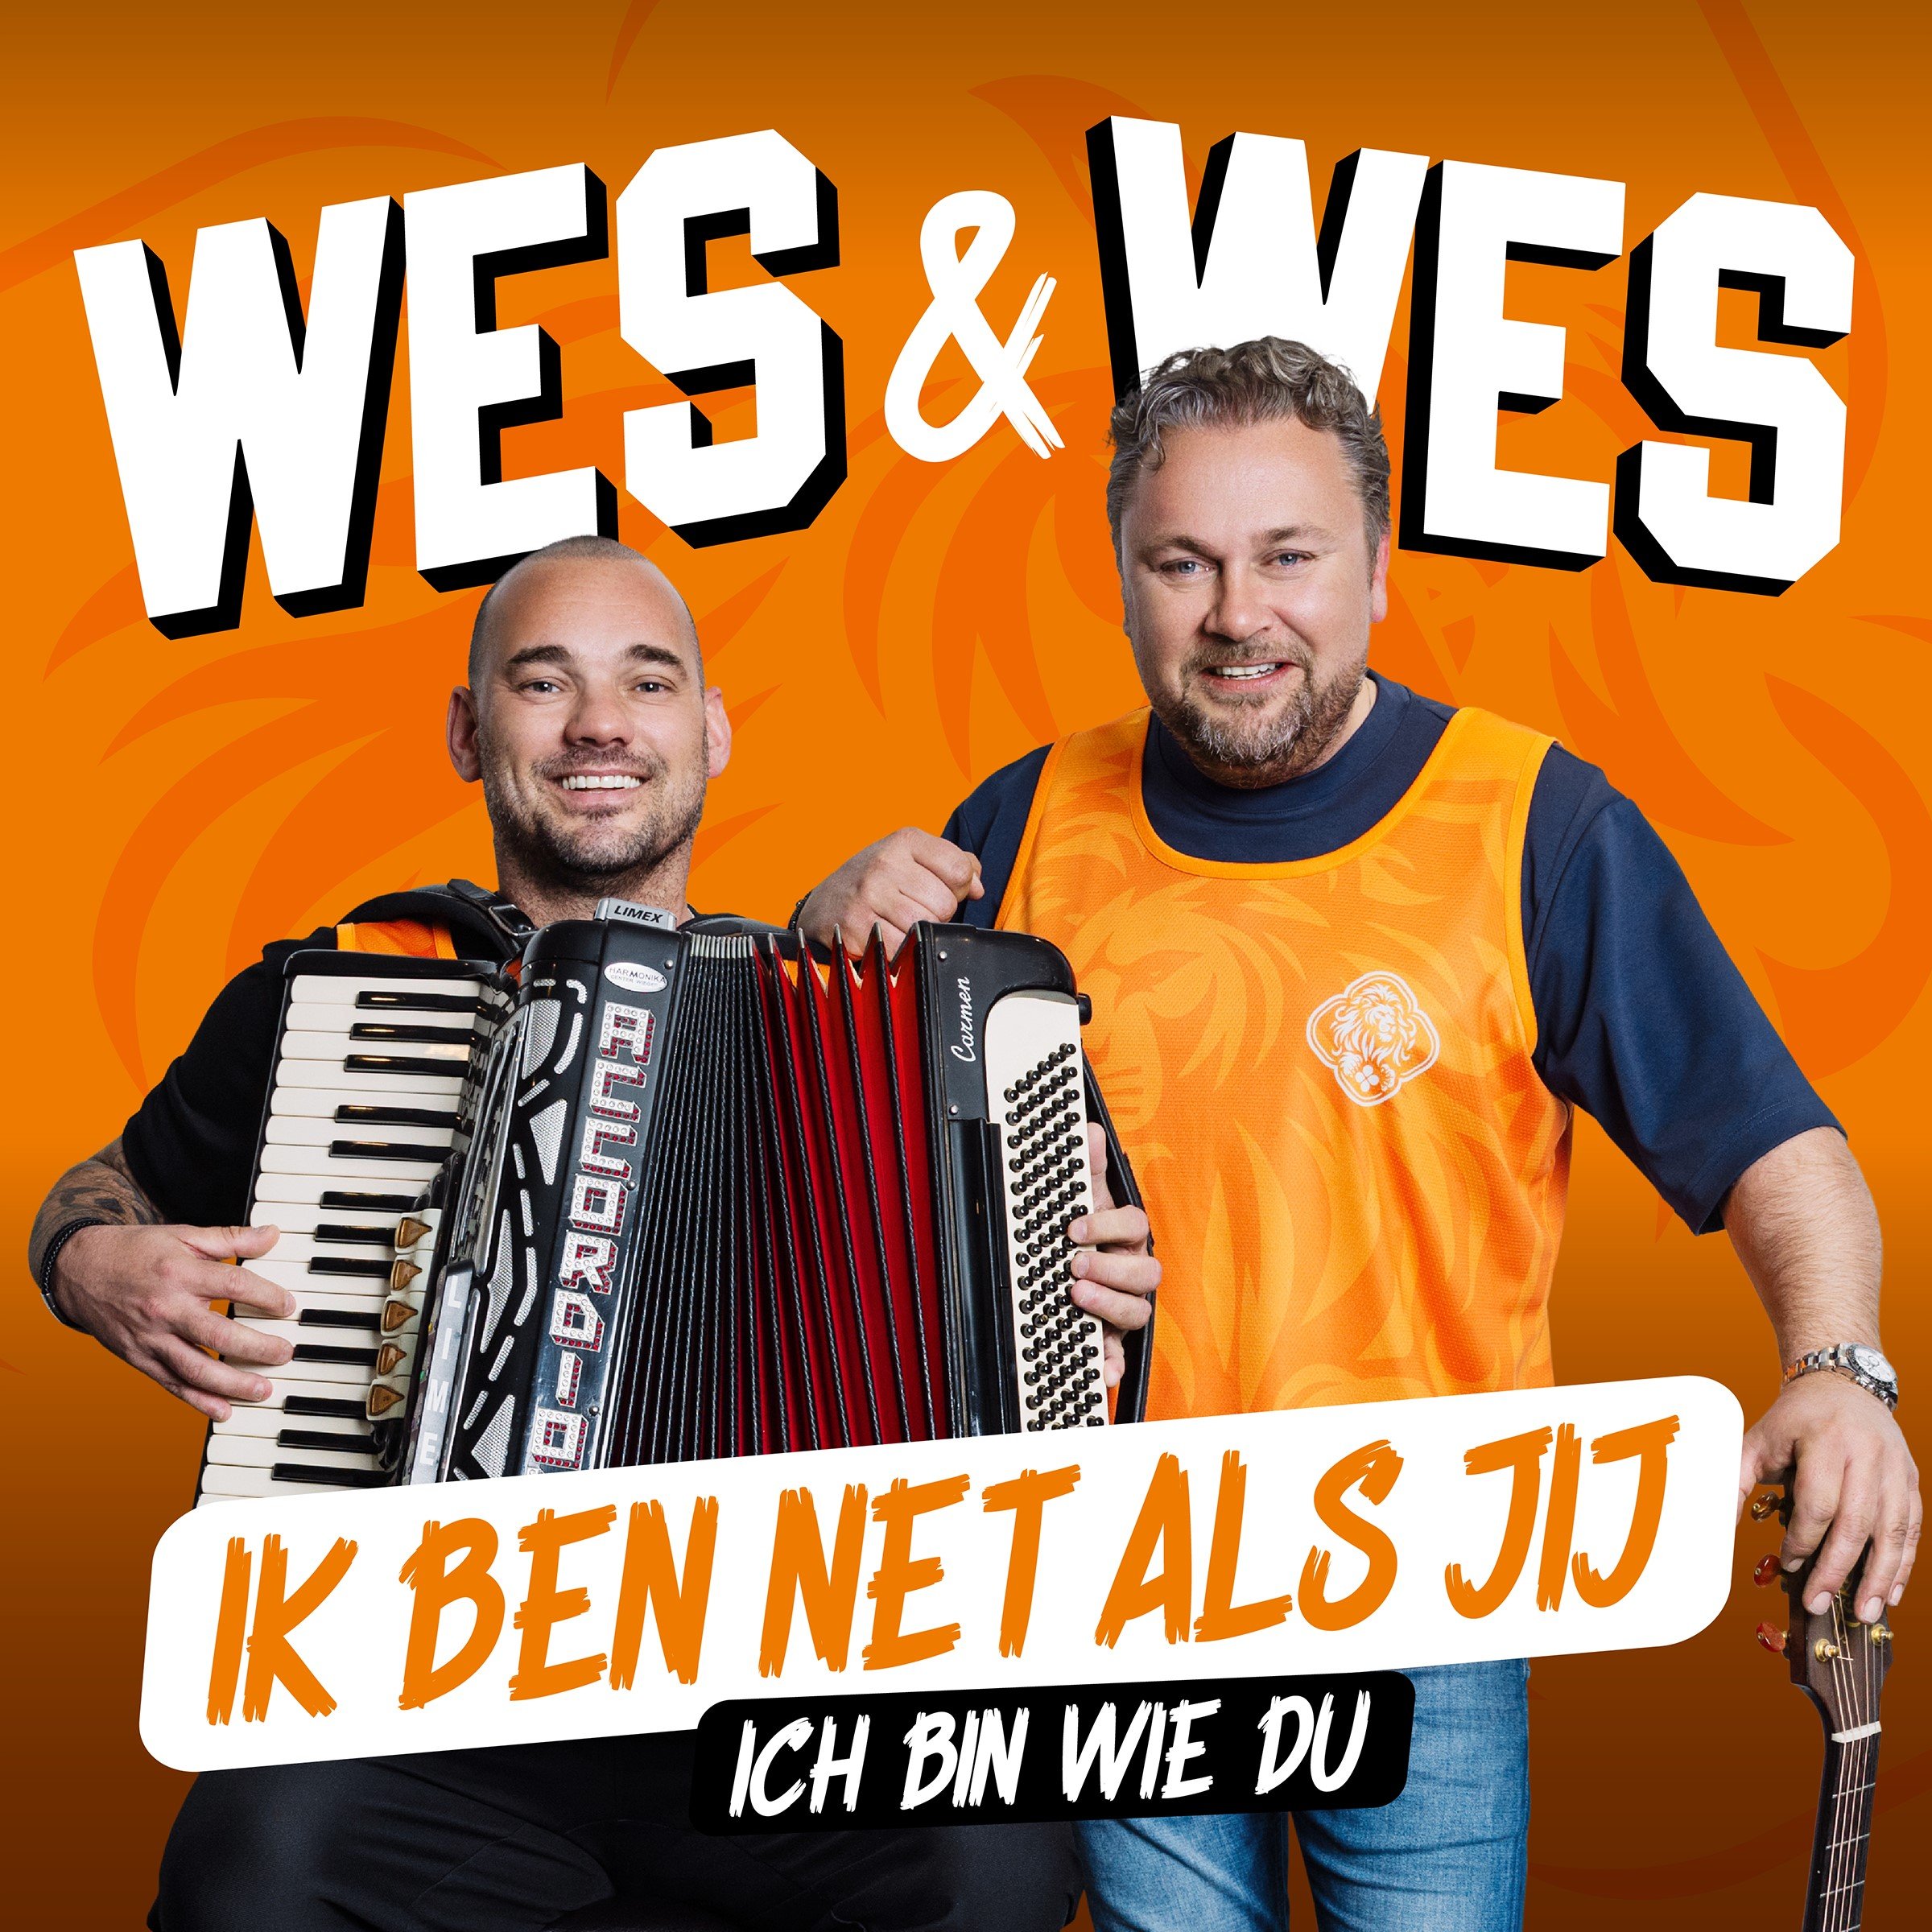 Wes & Wes – Ik Ben Net Als Jij (Ich Bin Wie Du)